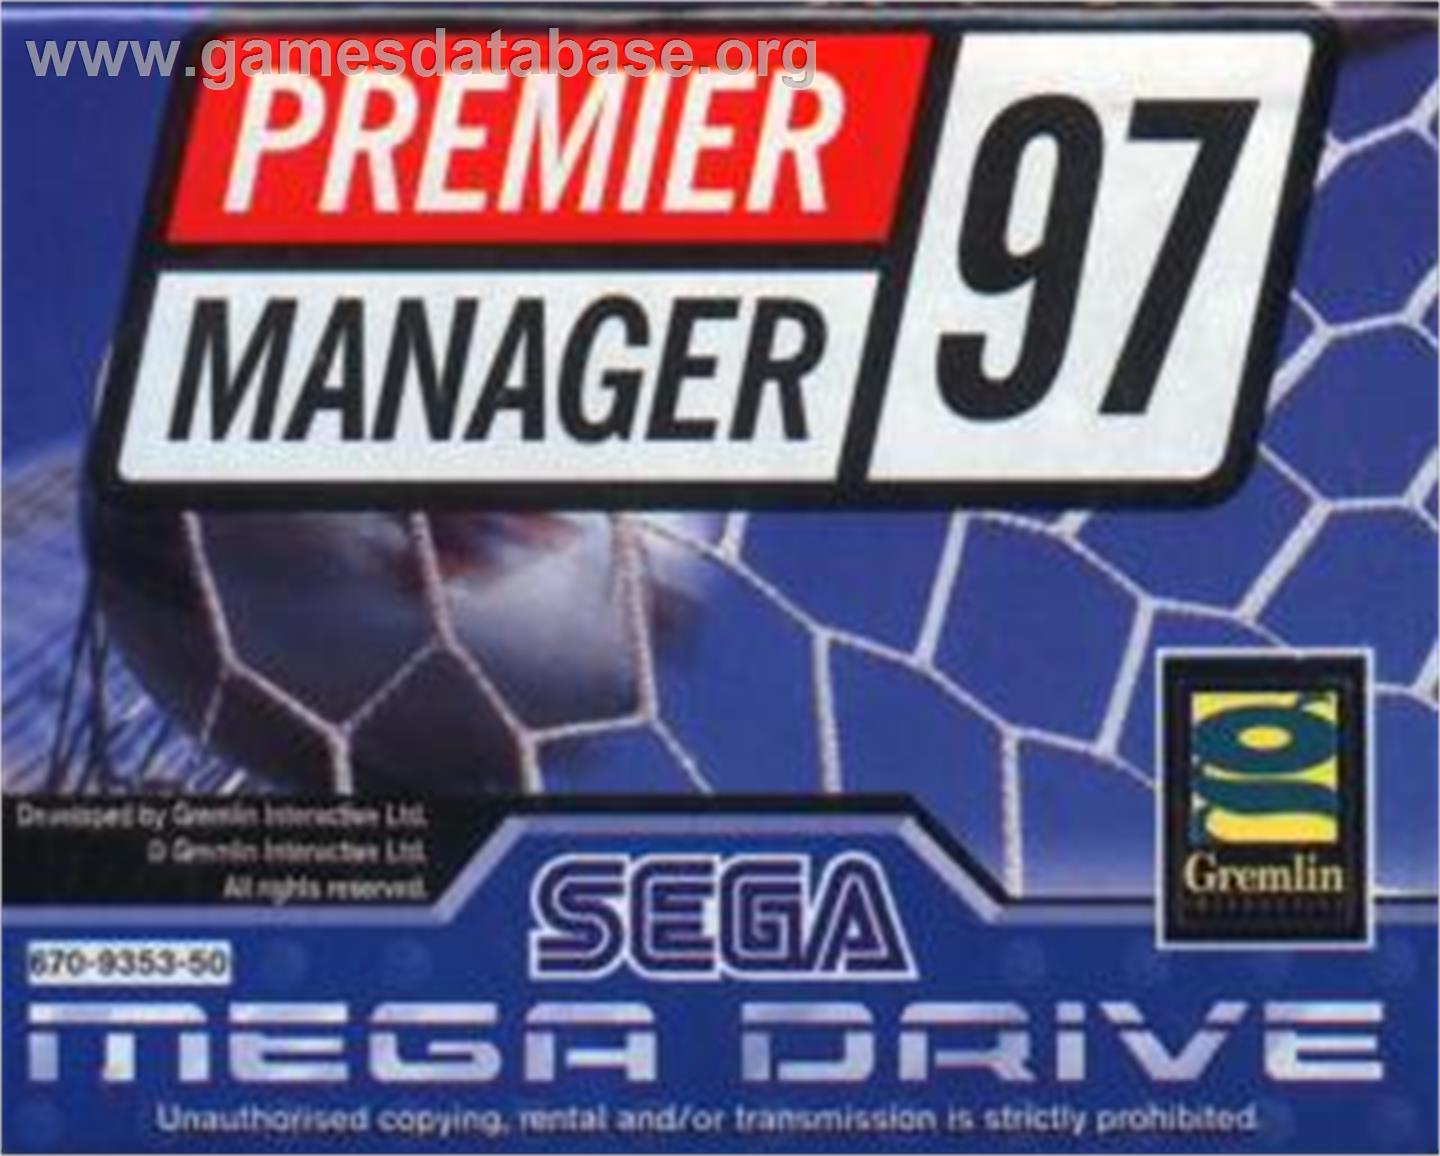 Premier Manager 97 - Sega Nomad - Artwork - Cartridge